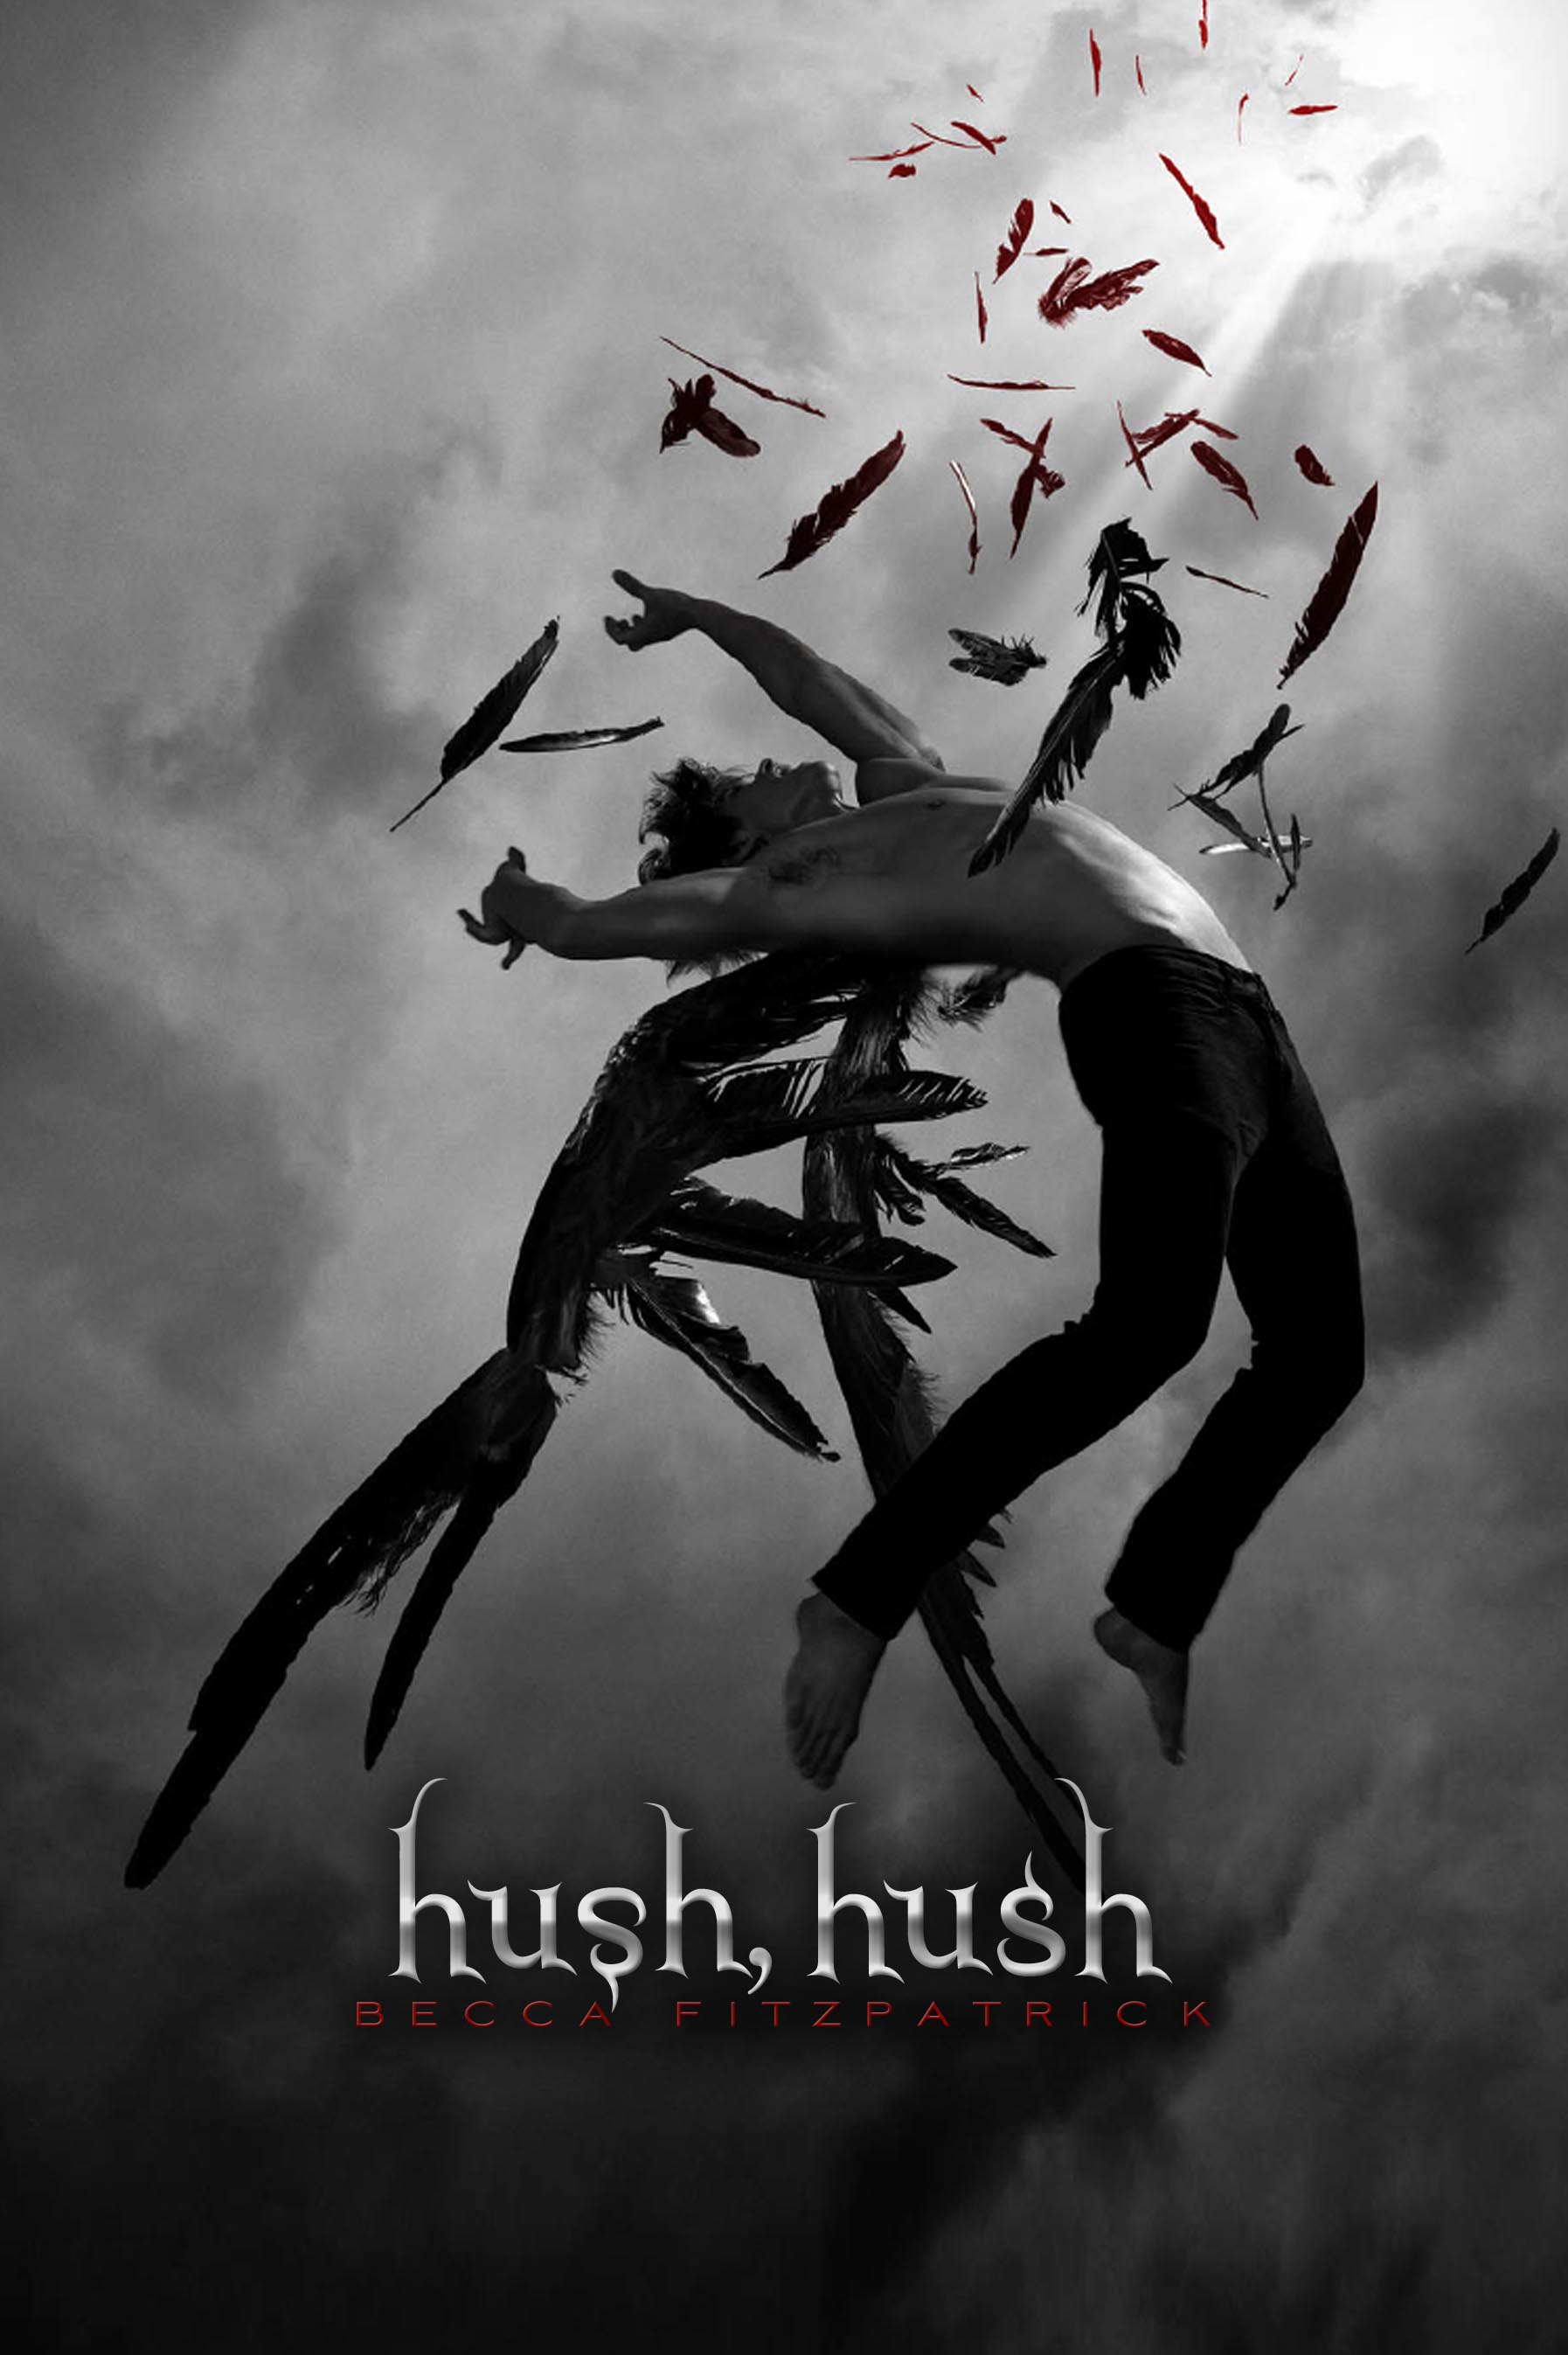 Résultat de recherche d'images pour "hush hush"